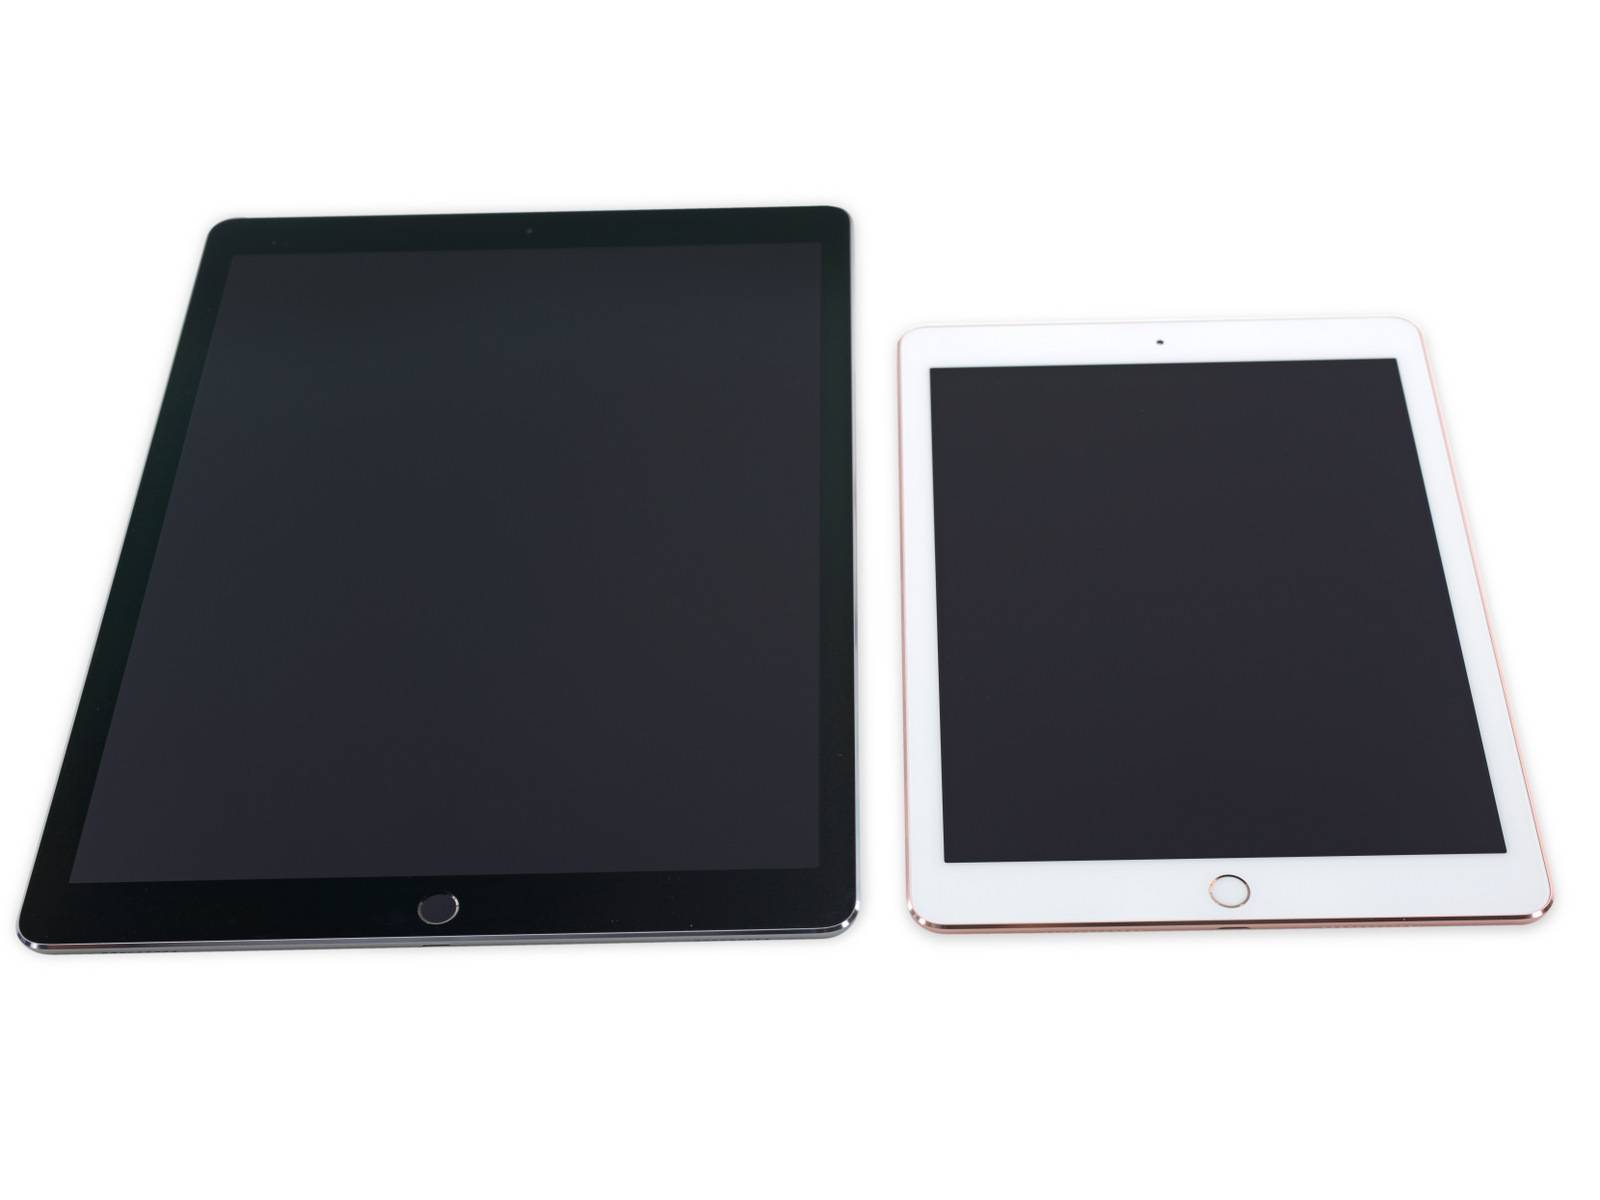 9.7 英寸 iPad Pro 拆解:除了 2GB RAM,它比 iP